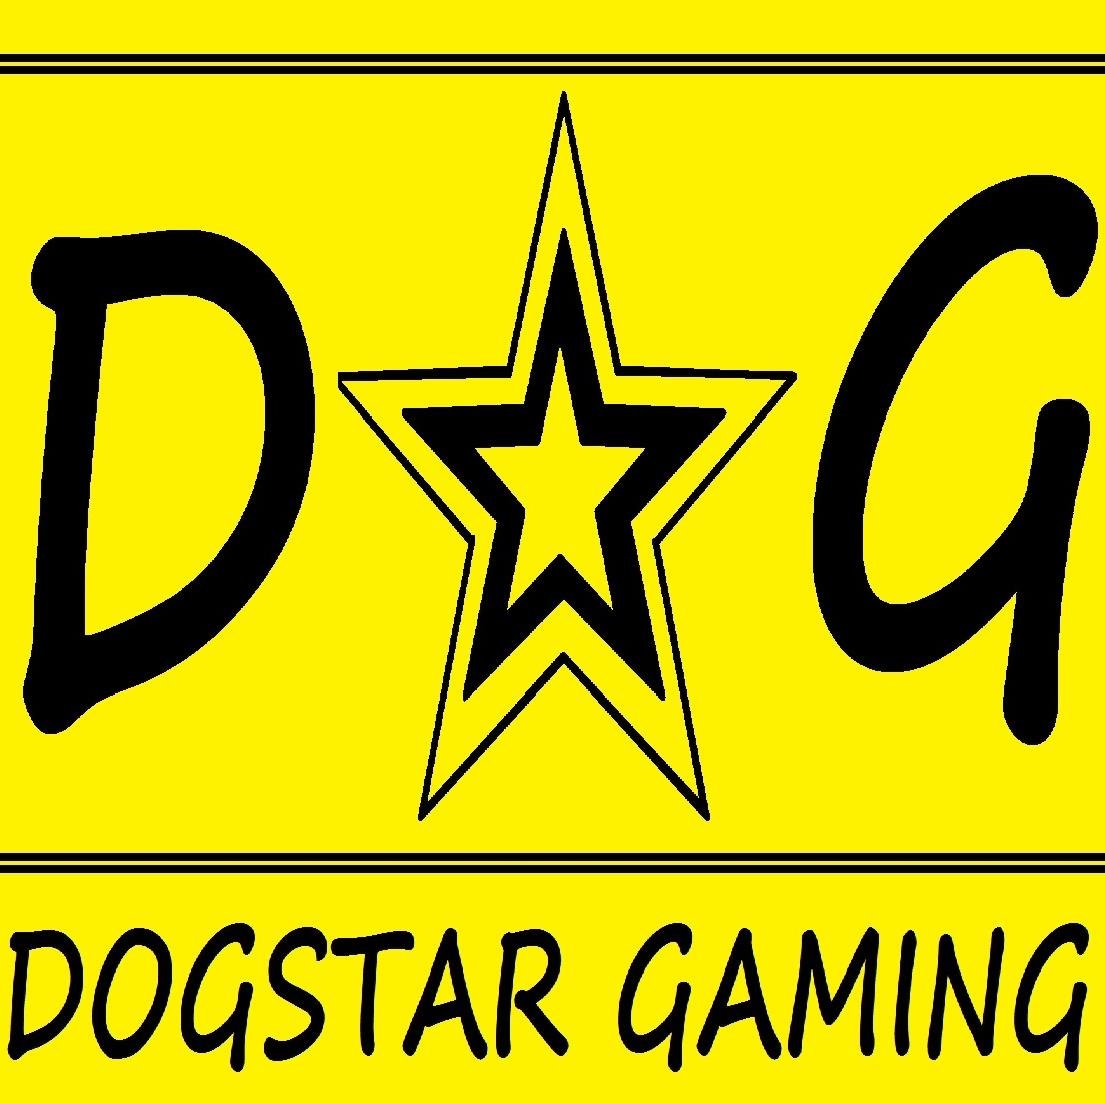 Dogstar Gaming